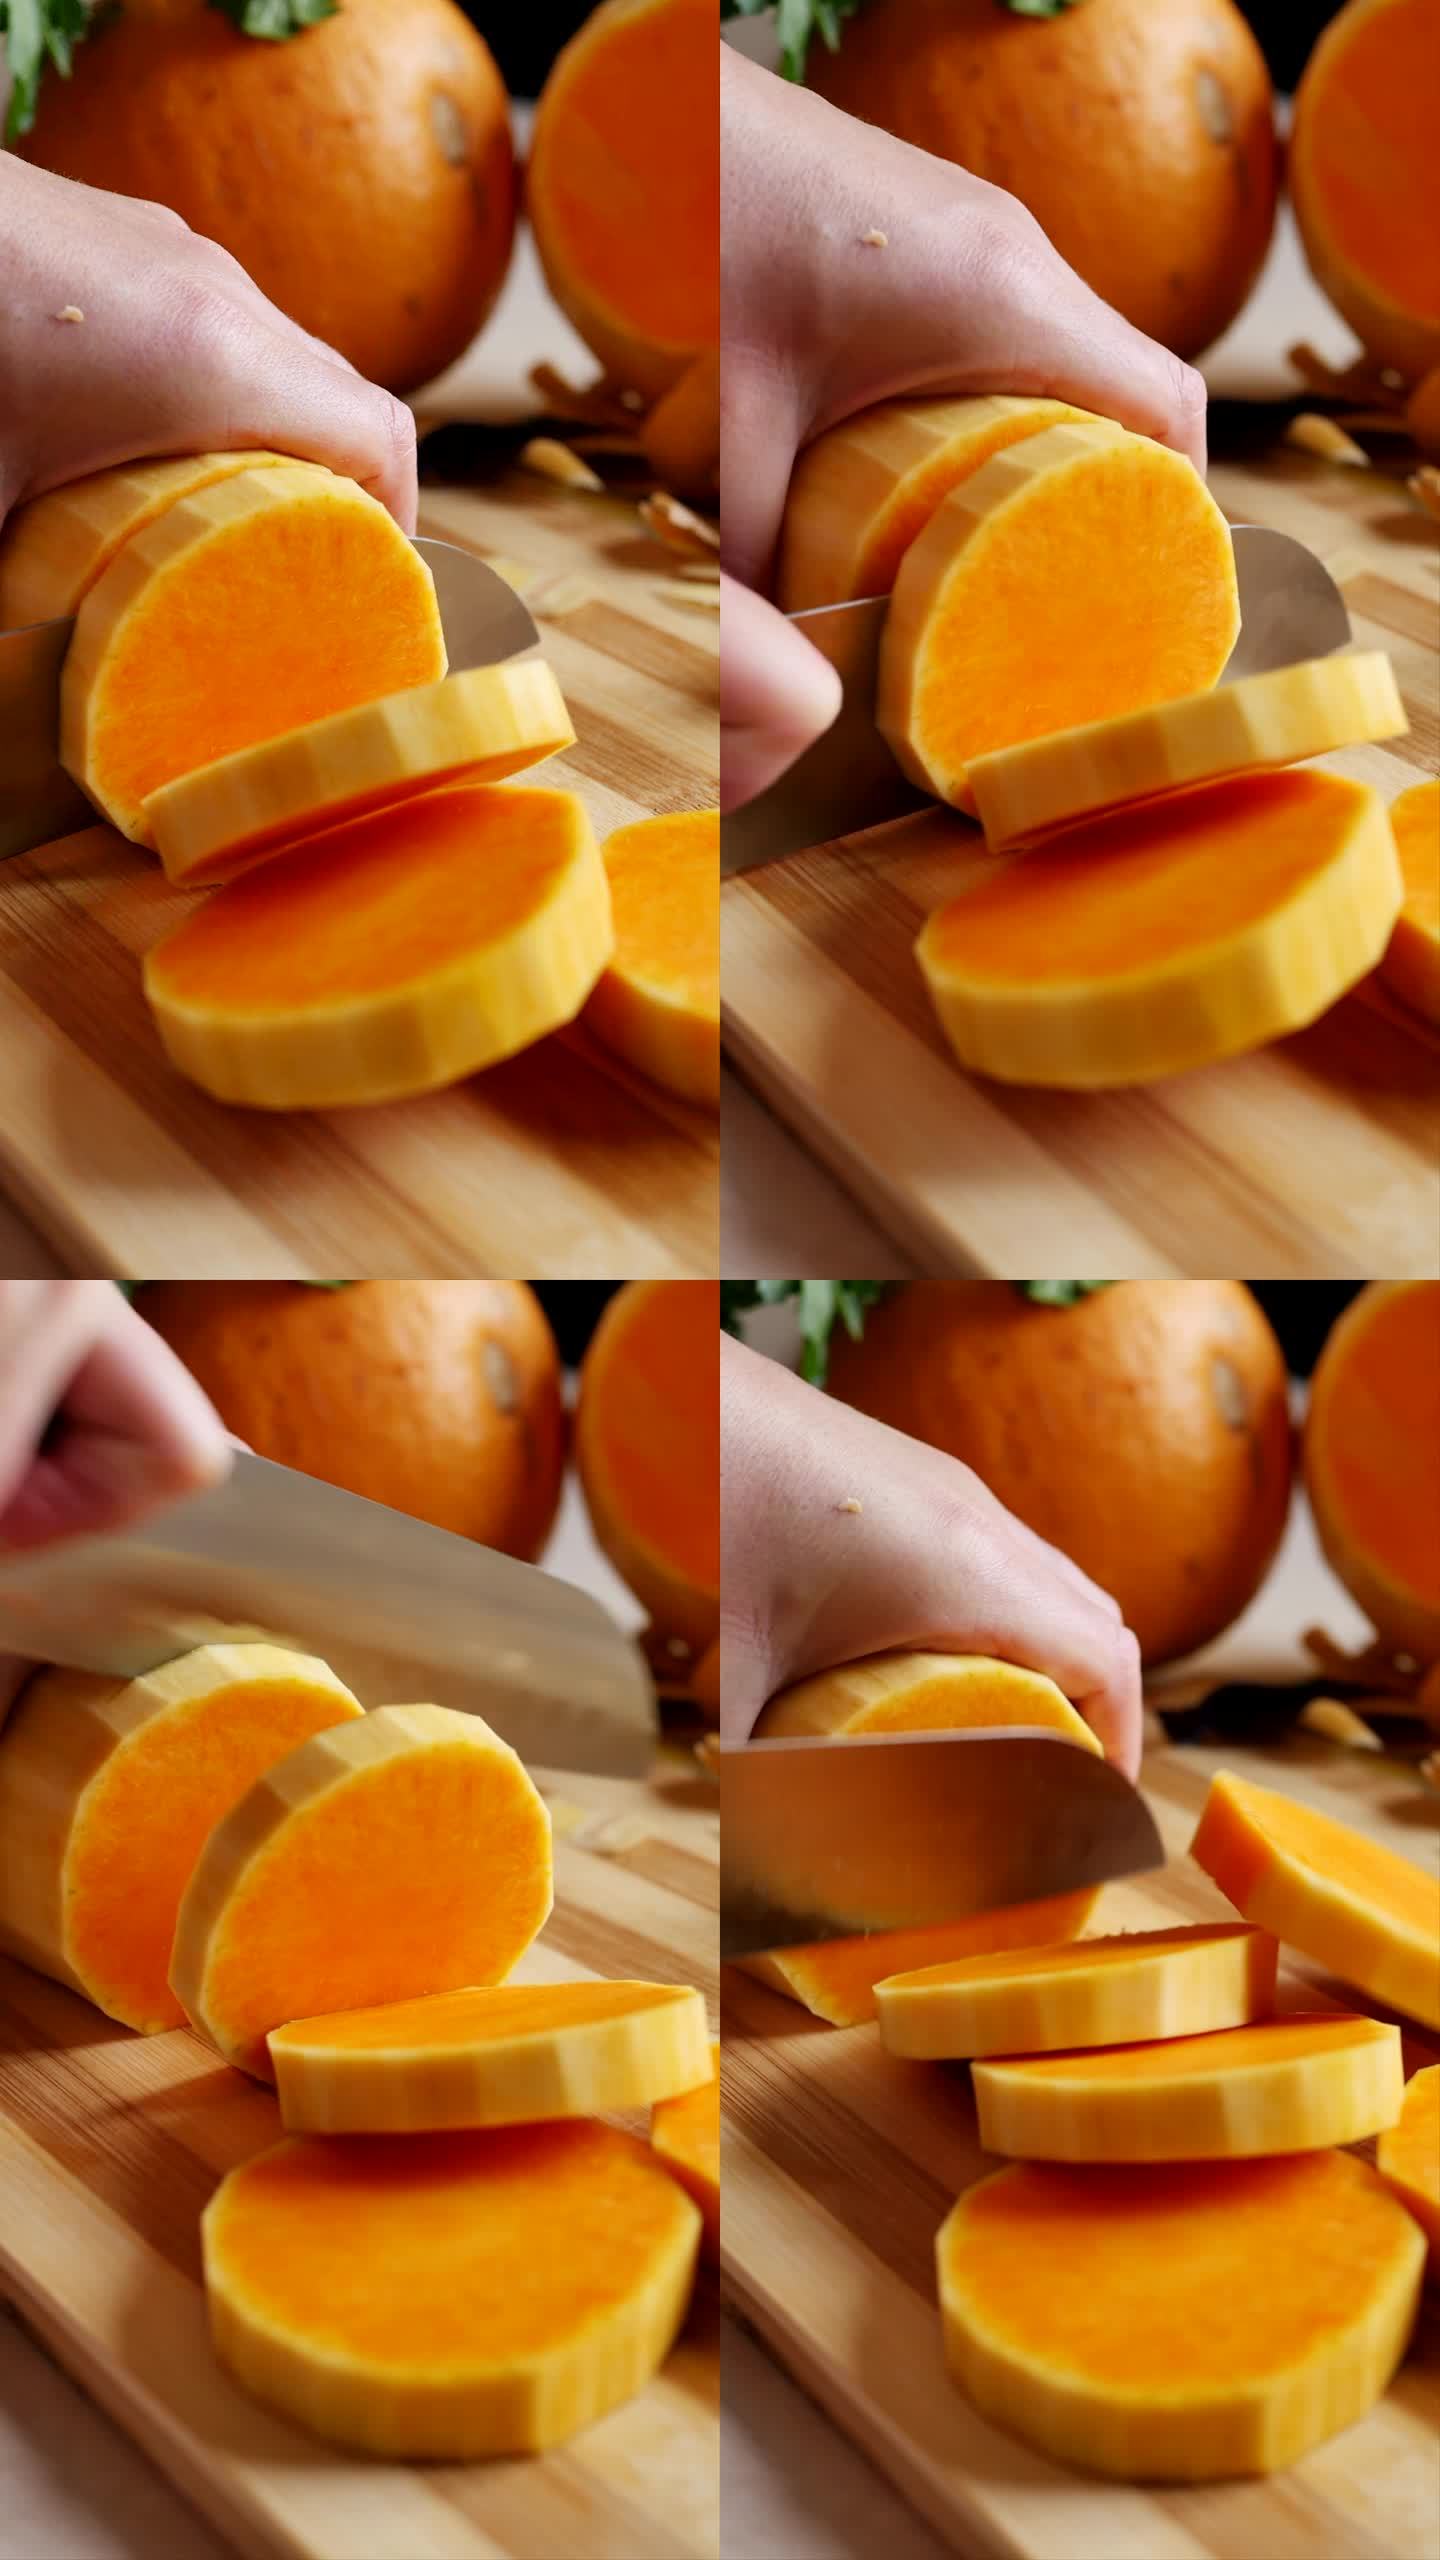 年轻的女工用菜刀和木制砧板切去皮的南瓜。将成熟的橙南瓜切成圆片，放入烤箱里烤。竖屏，特写